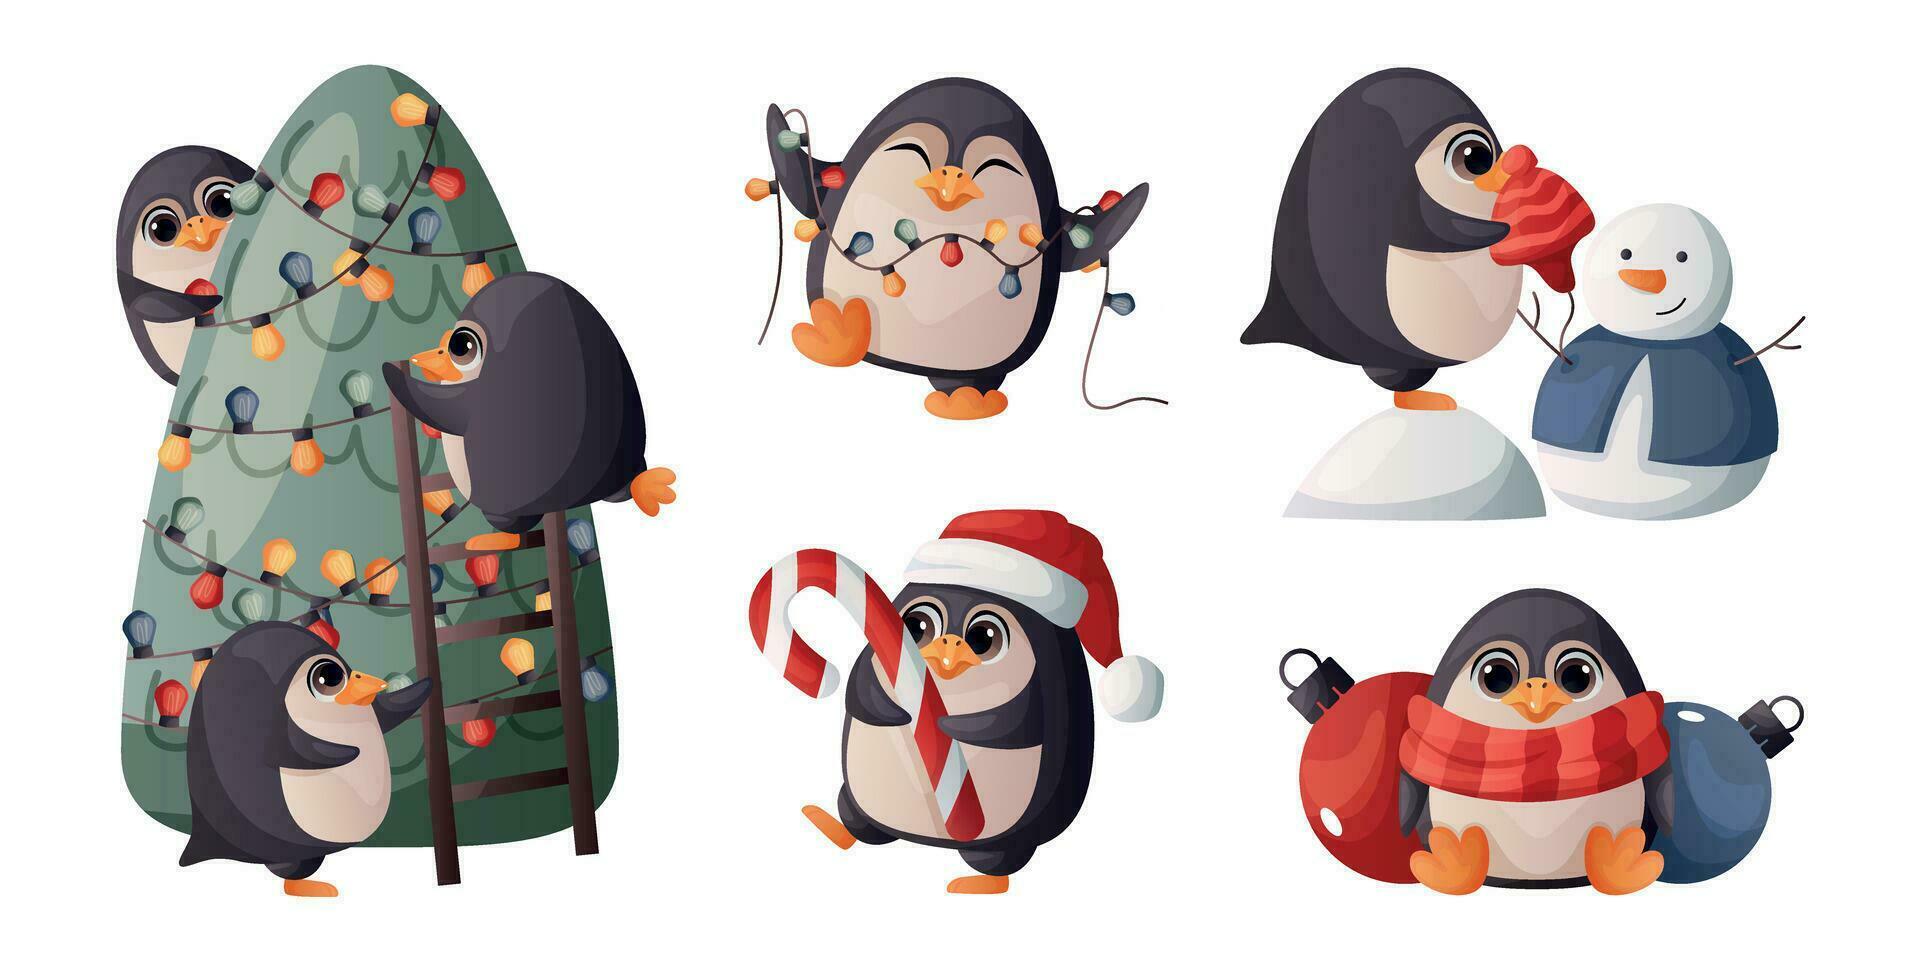 reeks van schattig vrolijk Kerstmis pinguïn in verschillend poseert. gelukkig pinguïns mascotte vieren nieuw jaar, versieren Kerstmis boom, guirlande, snoep. vogel karakter voor Kerstmis groet. winter is komt eraan, warm wensen vector